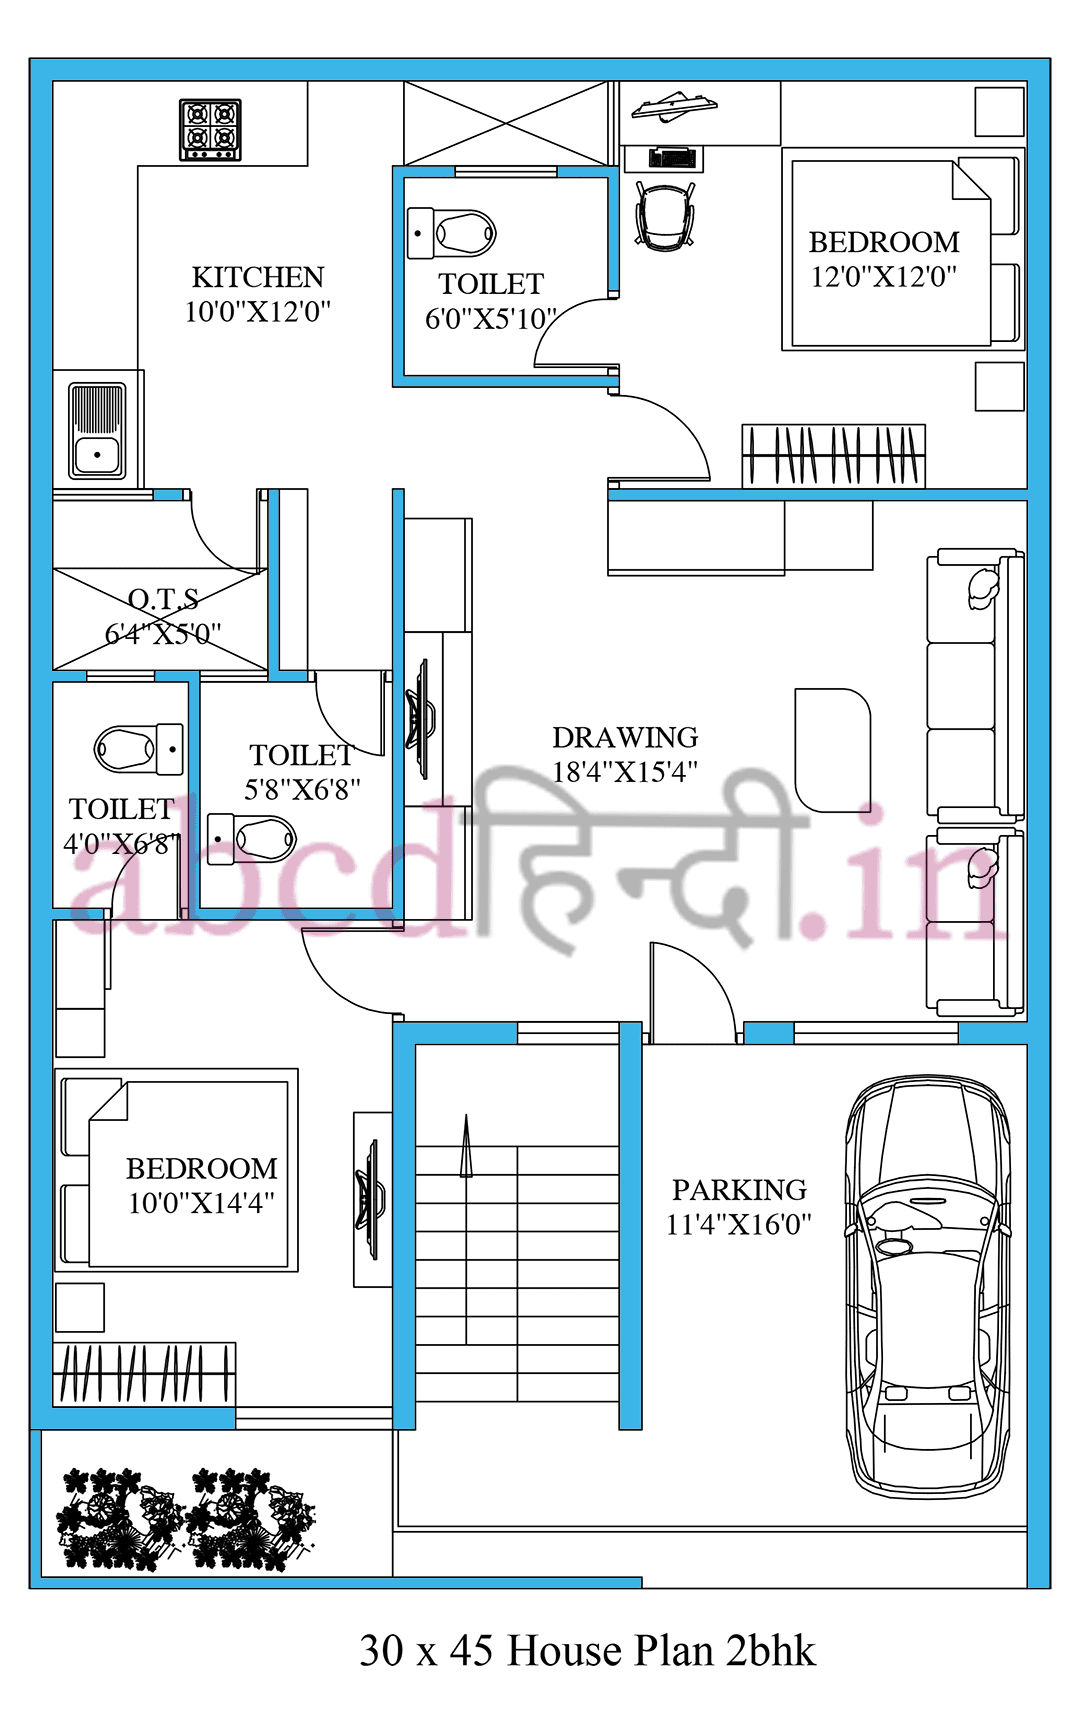 30x45 house plan